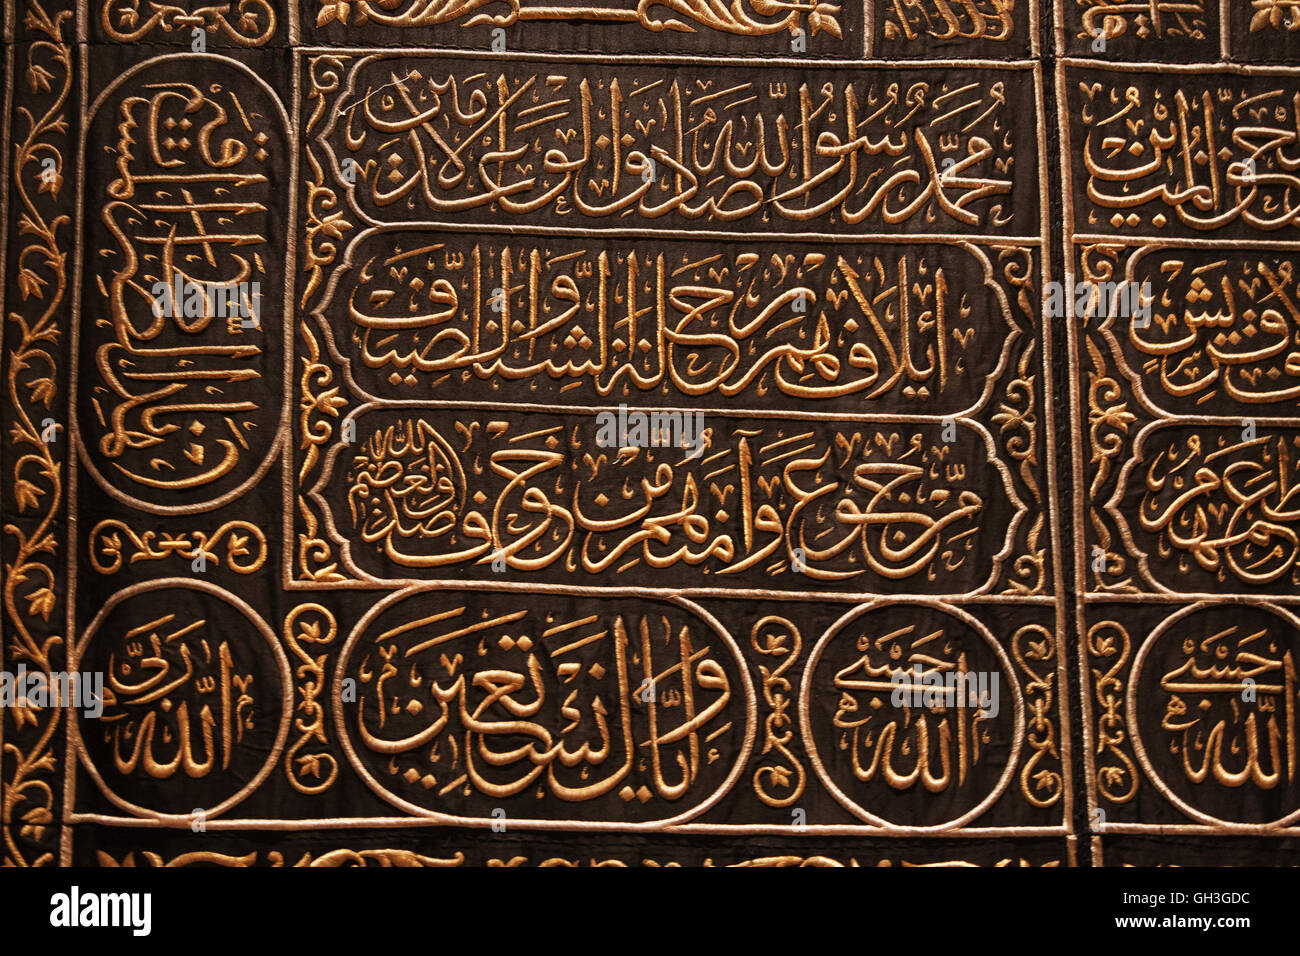 El alfabeto árabe en la cubierta negra de la "piedra negra" Foto de stock